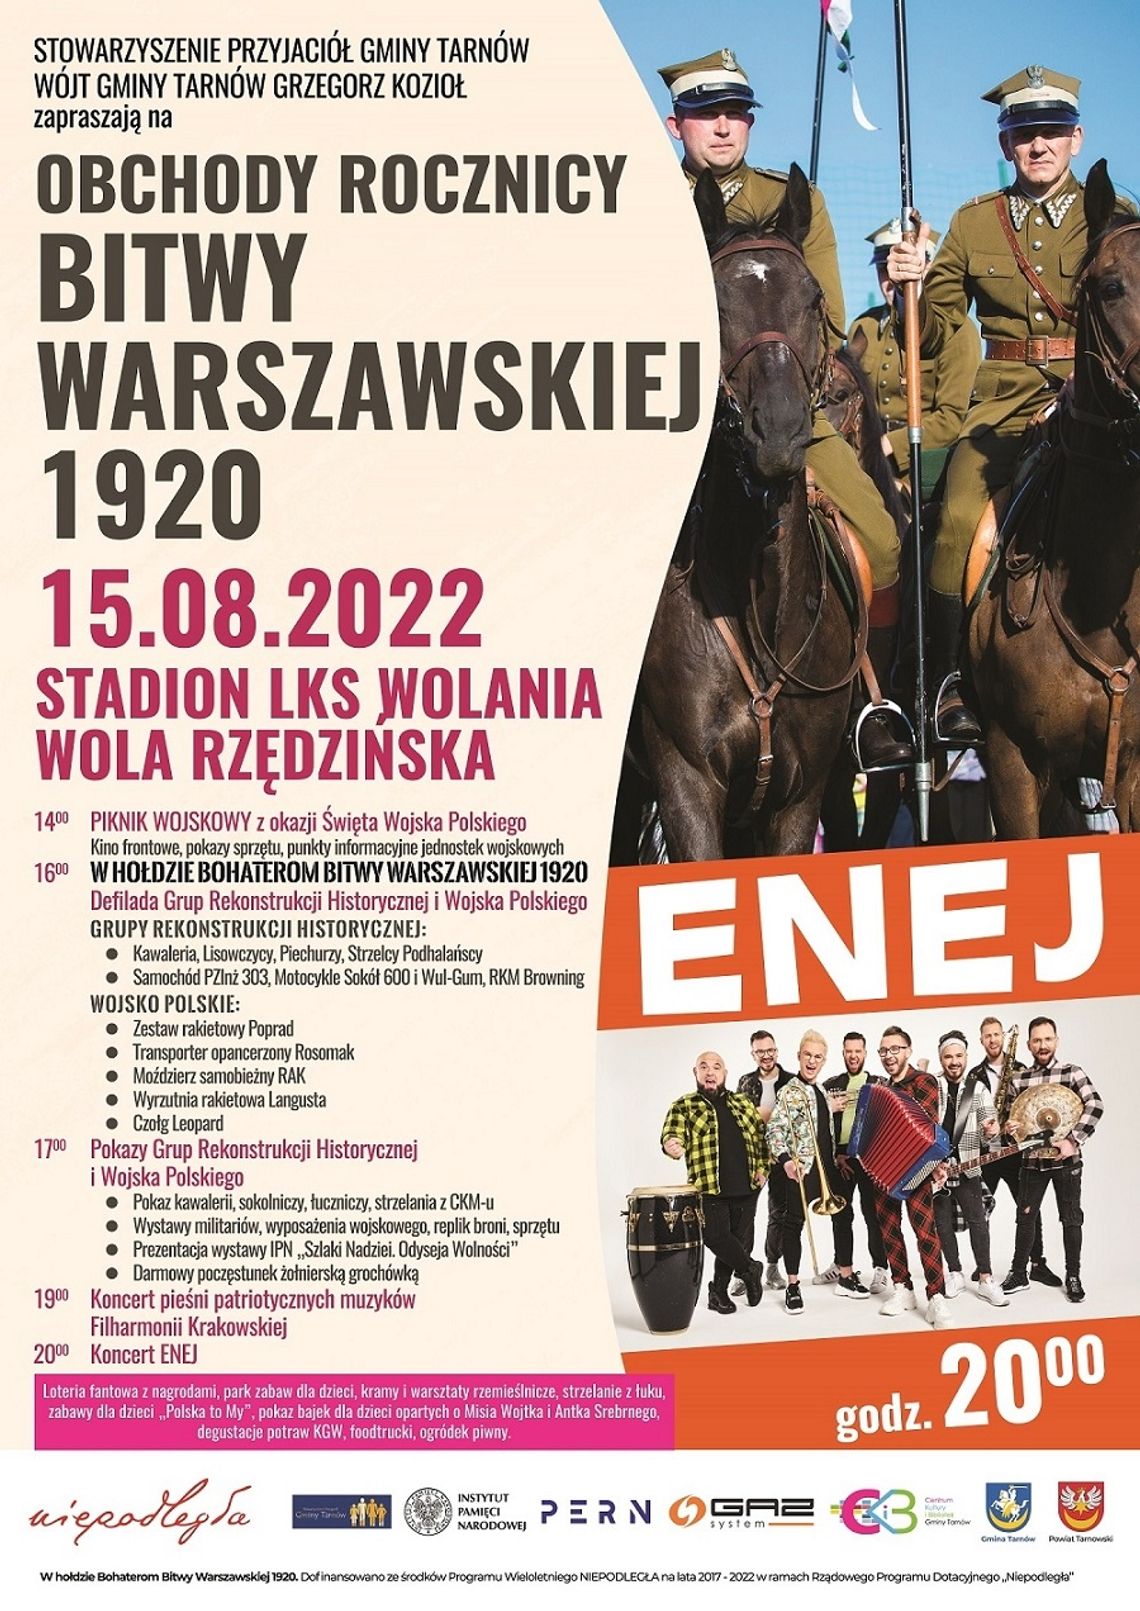 Obchody rocznicy Bitwy Warszawskiej 1920 w Woli Rzędzińskiej z piknikiem wojskowym i zespołem ENEJ przed nami!